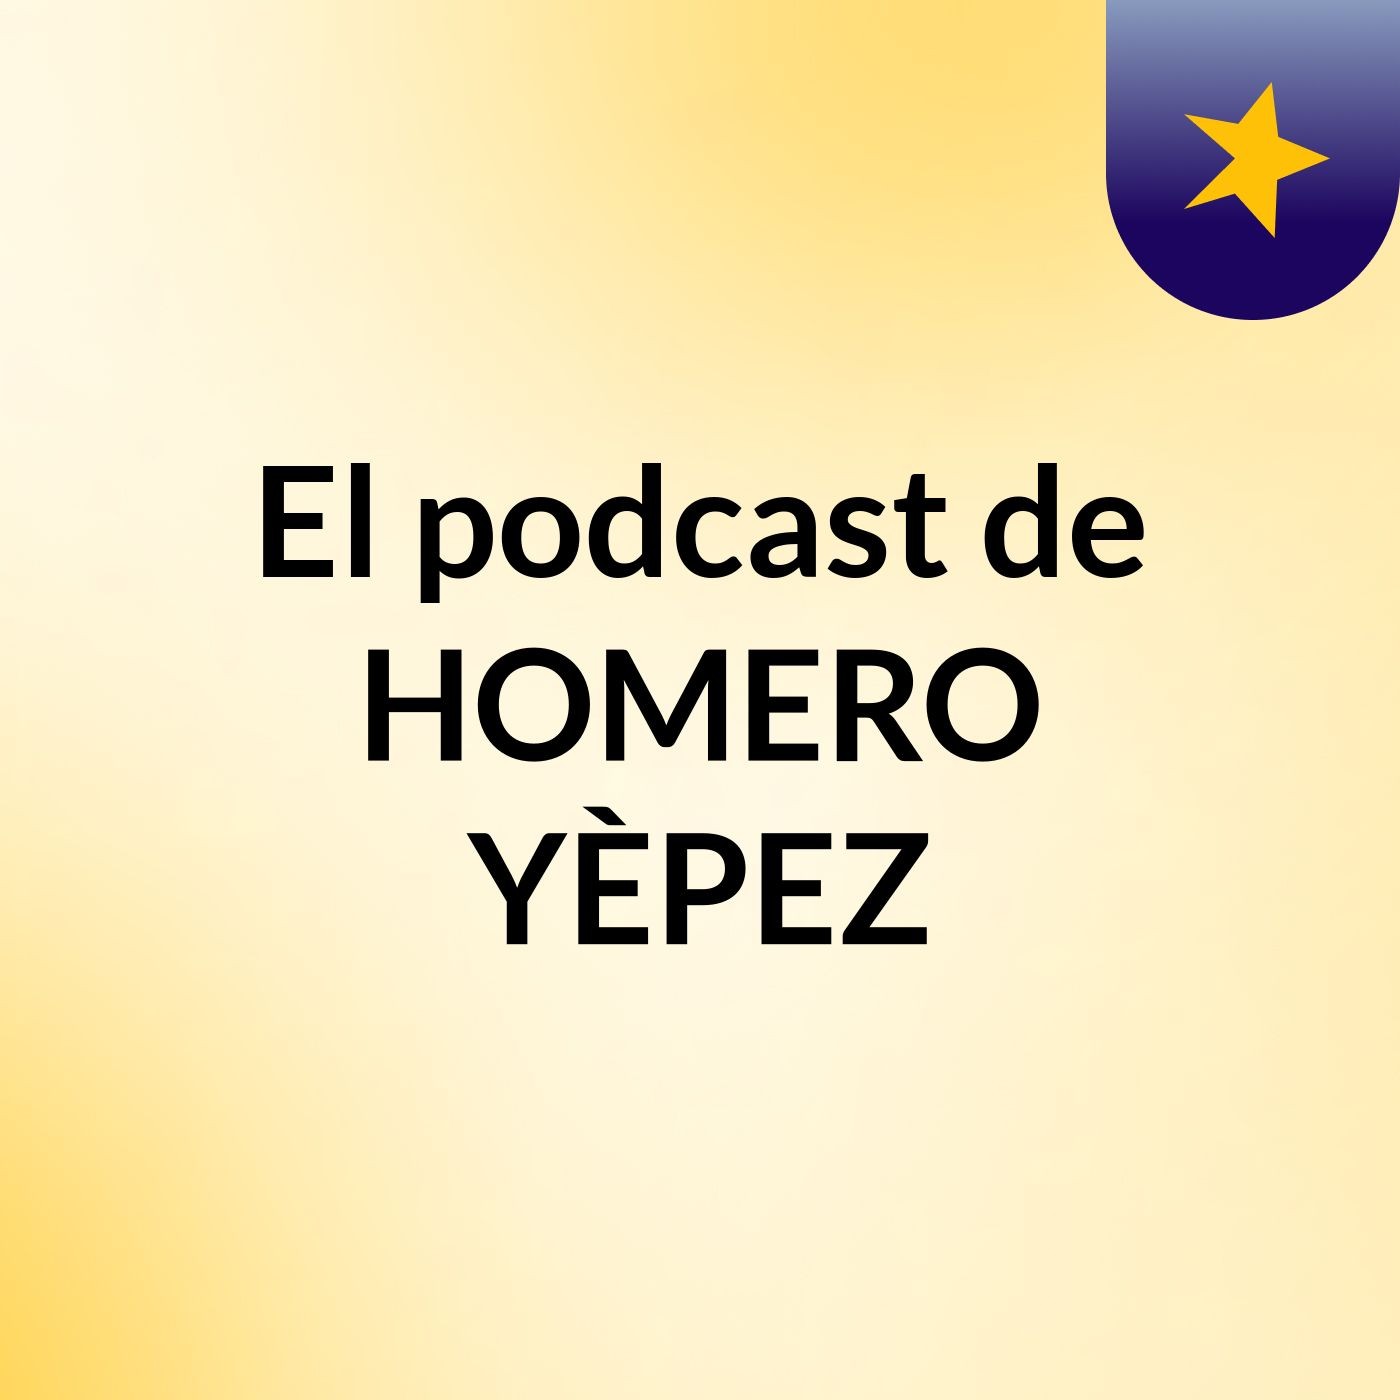 El podcast de HOMERO YÈPEZ